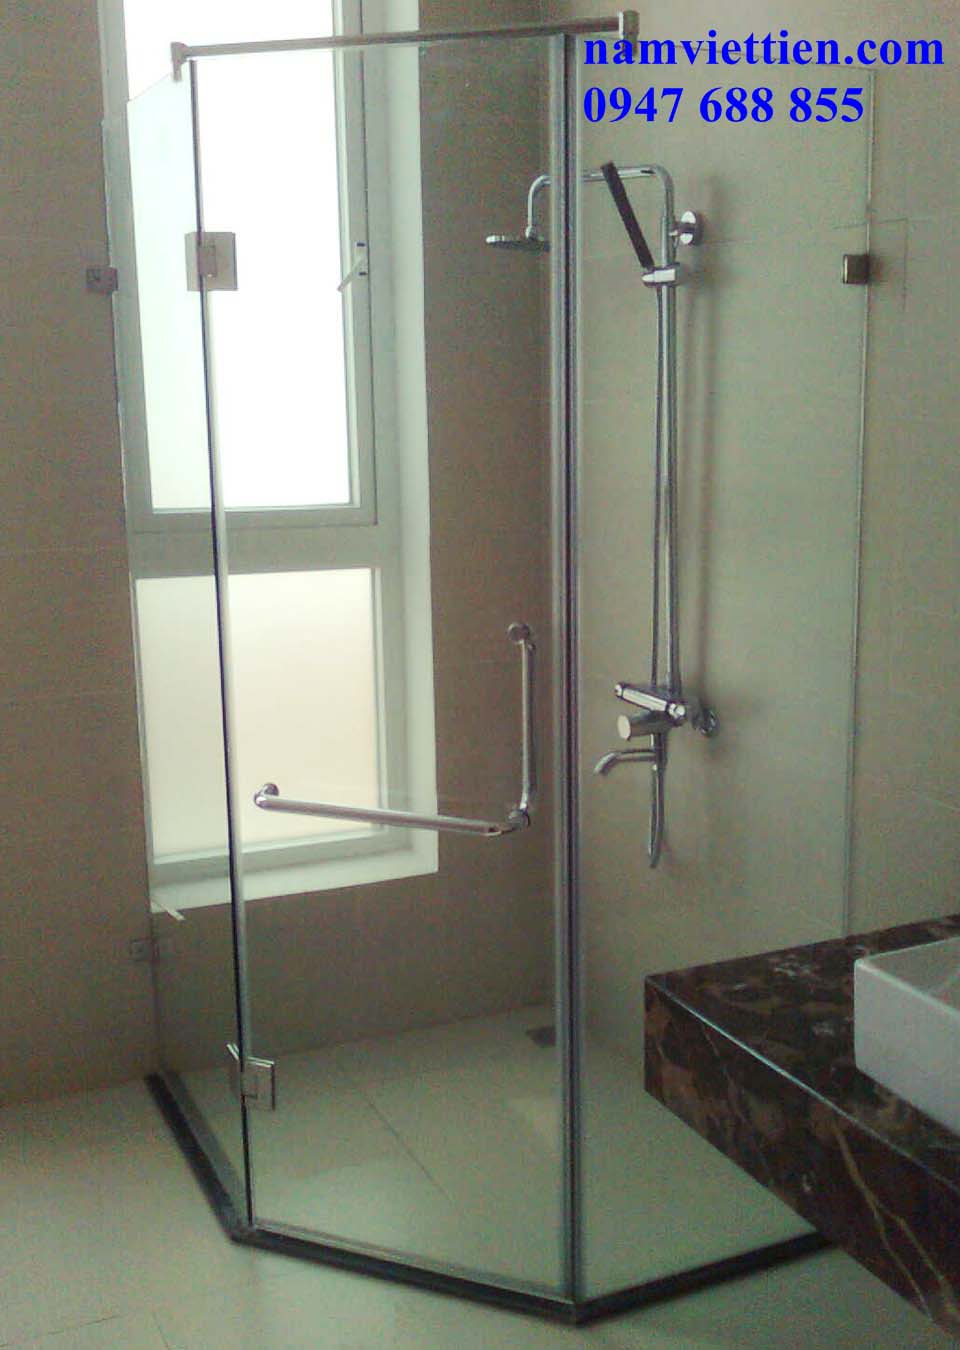 Lắp đặt phòng tắm bằng kính-Công ty chuyên lắp đặt phòng tắm bằng kính